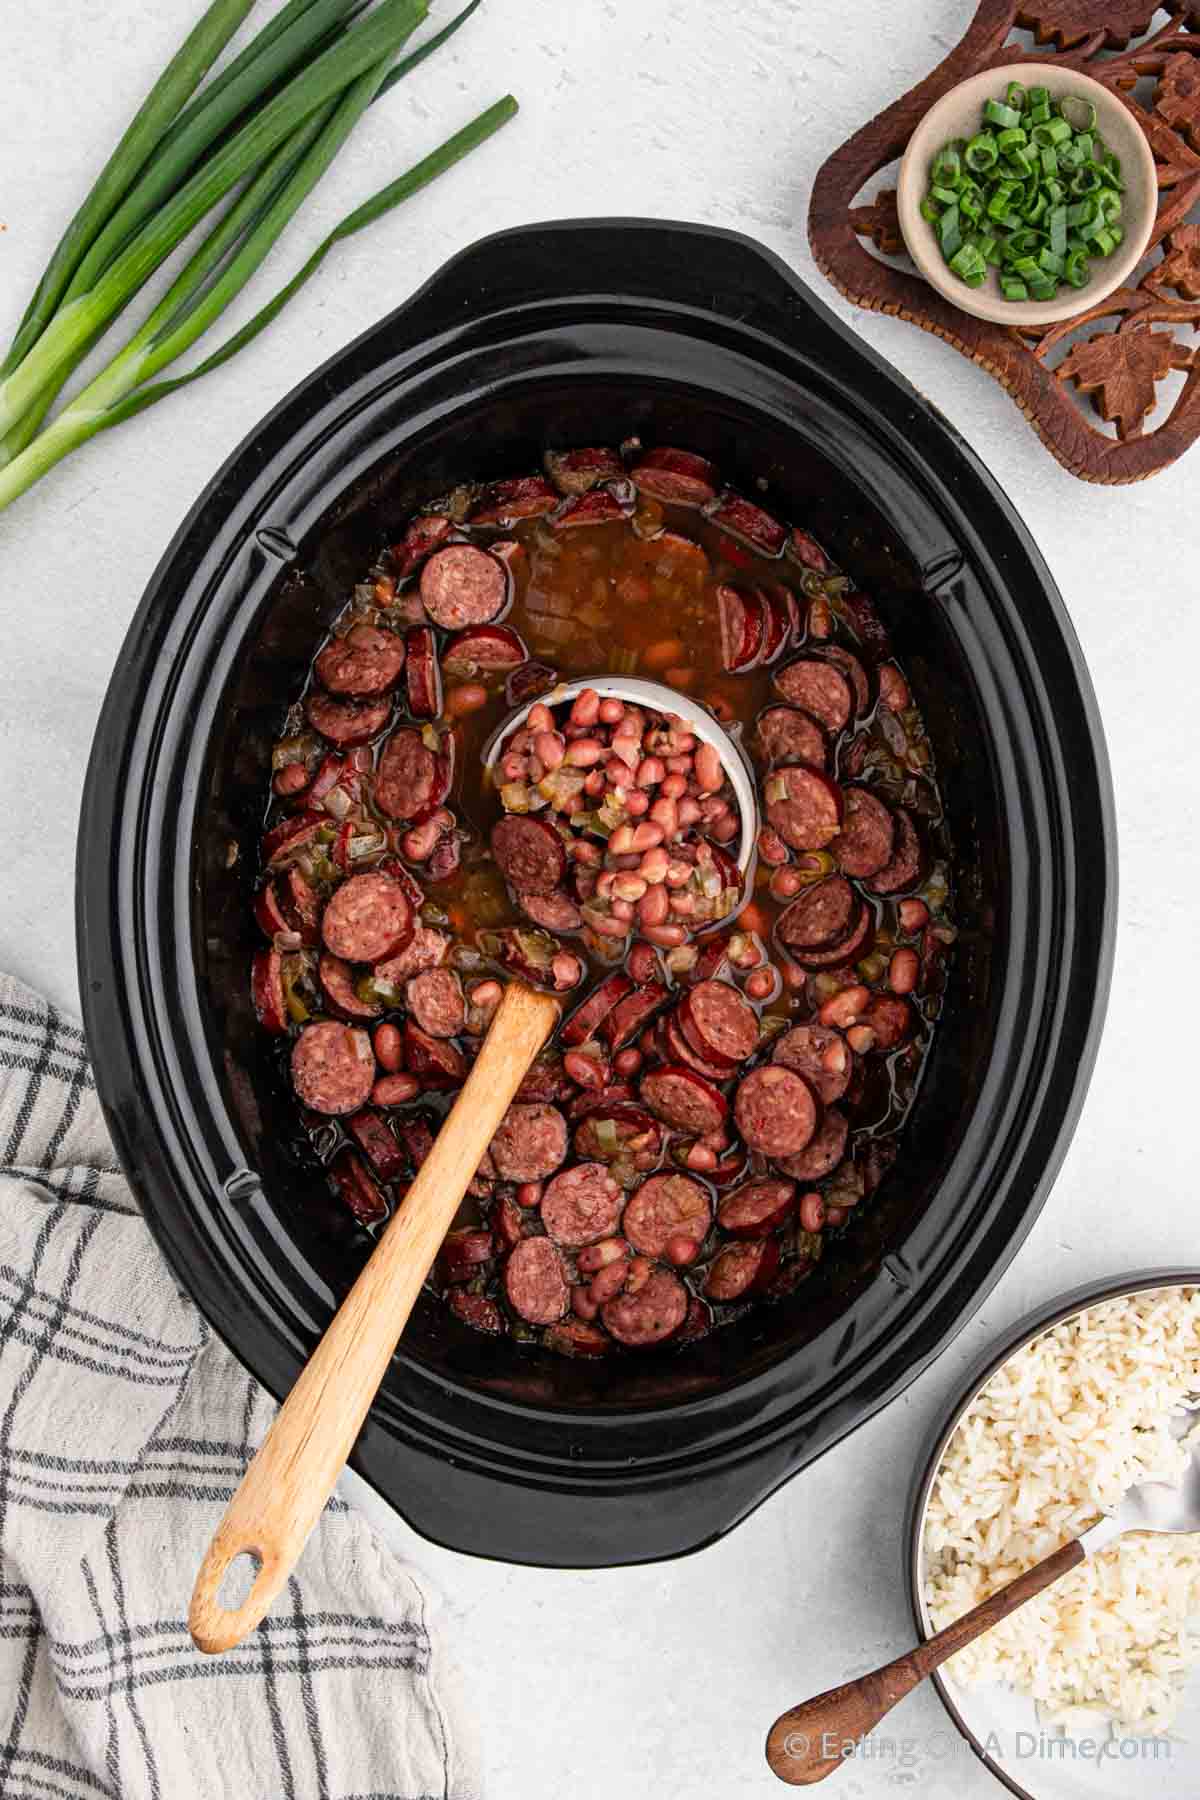 https://www.eatingonadime.com/wp-content/uploads/2019/09/200KB-Slow-Cooker-Red-Beans-and-Rice-13.jpg